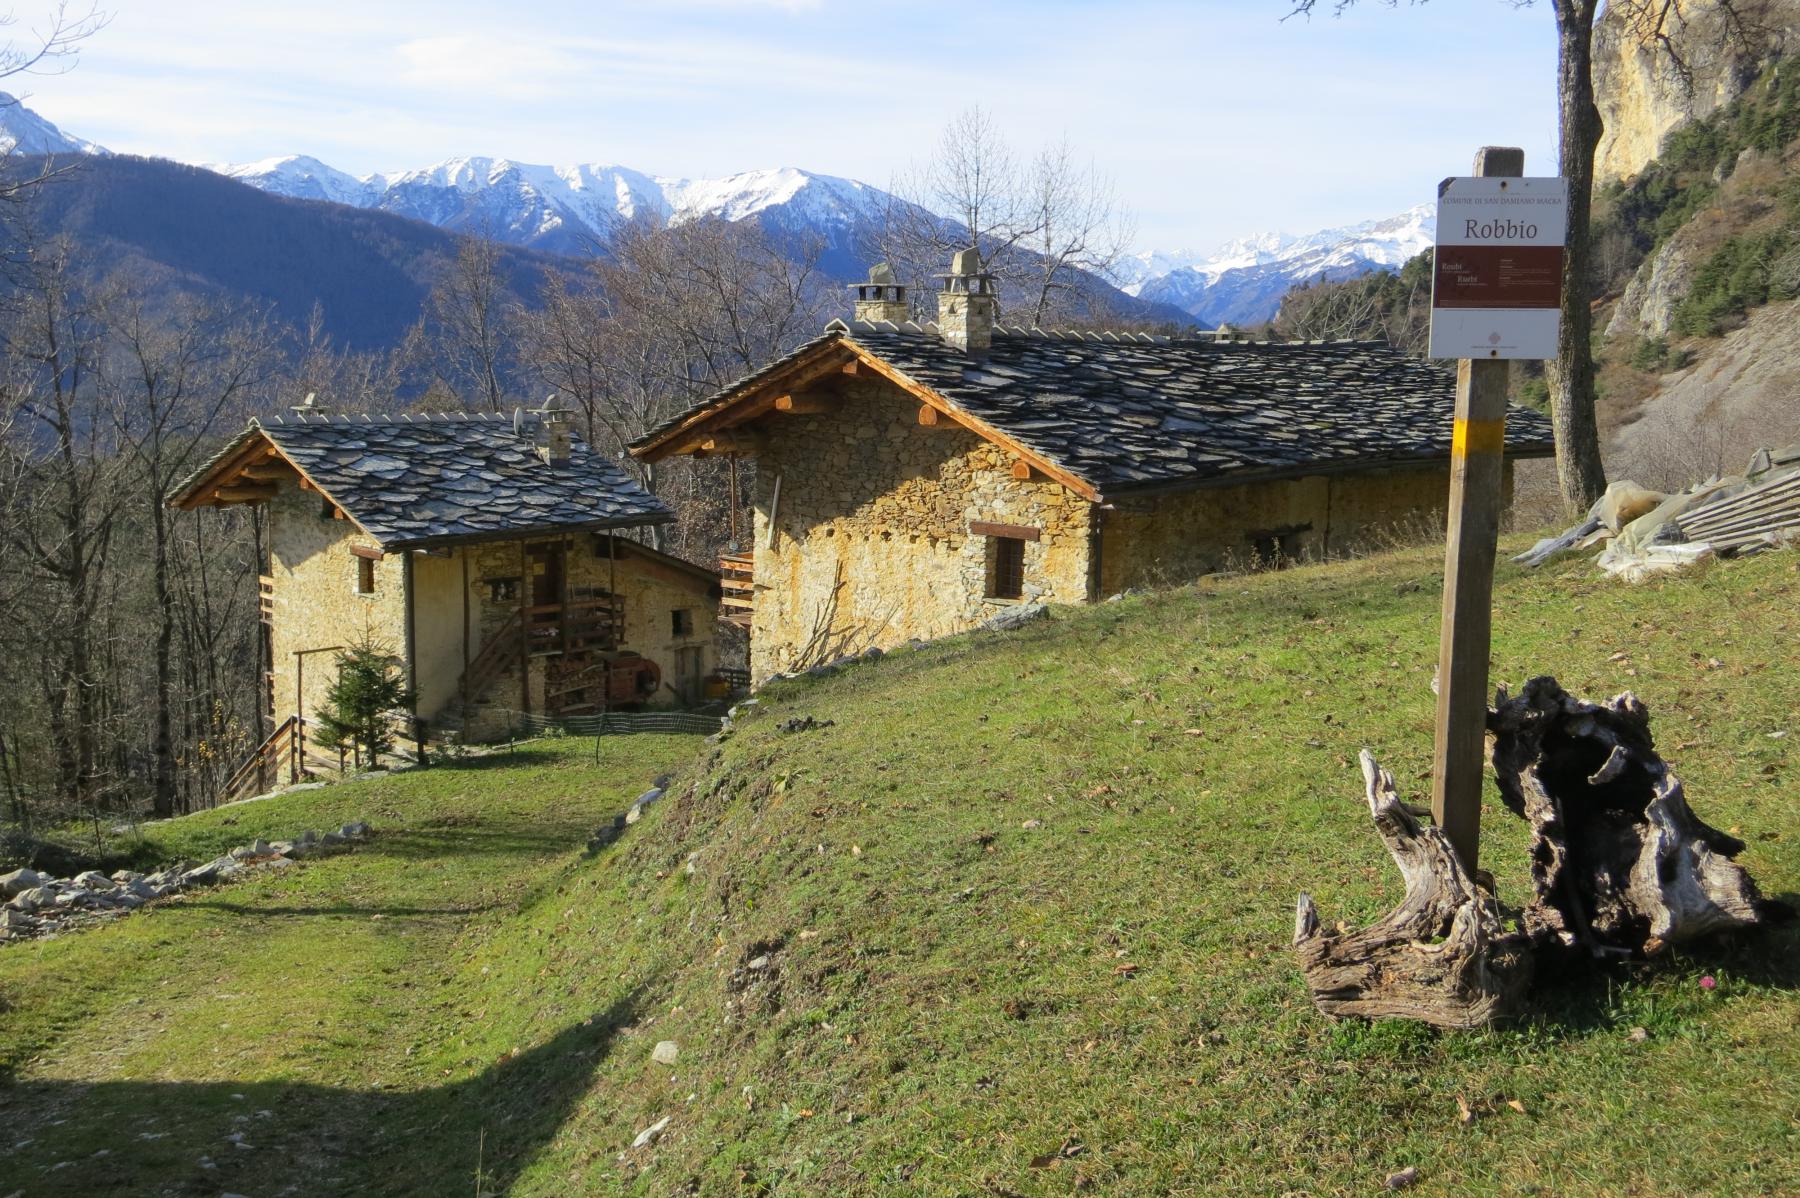 Grange Rubbio q. 1250 m